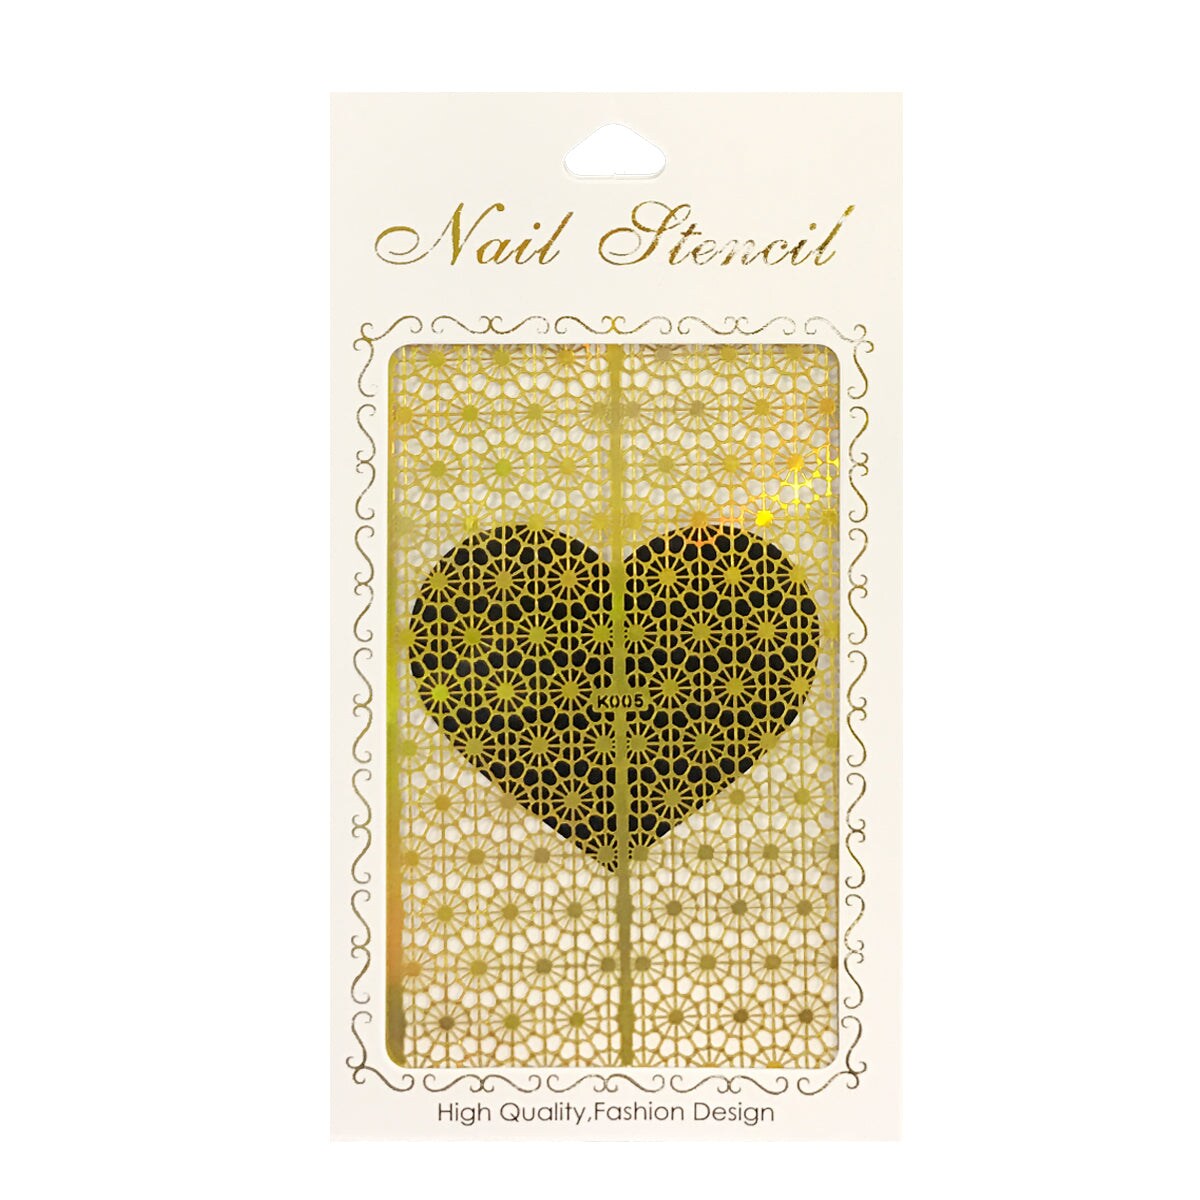 Wrapables Gold Nail Art Guide Large Nail Stencil Sheet - Web